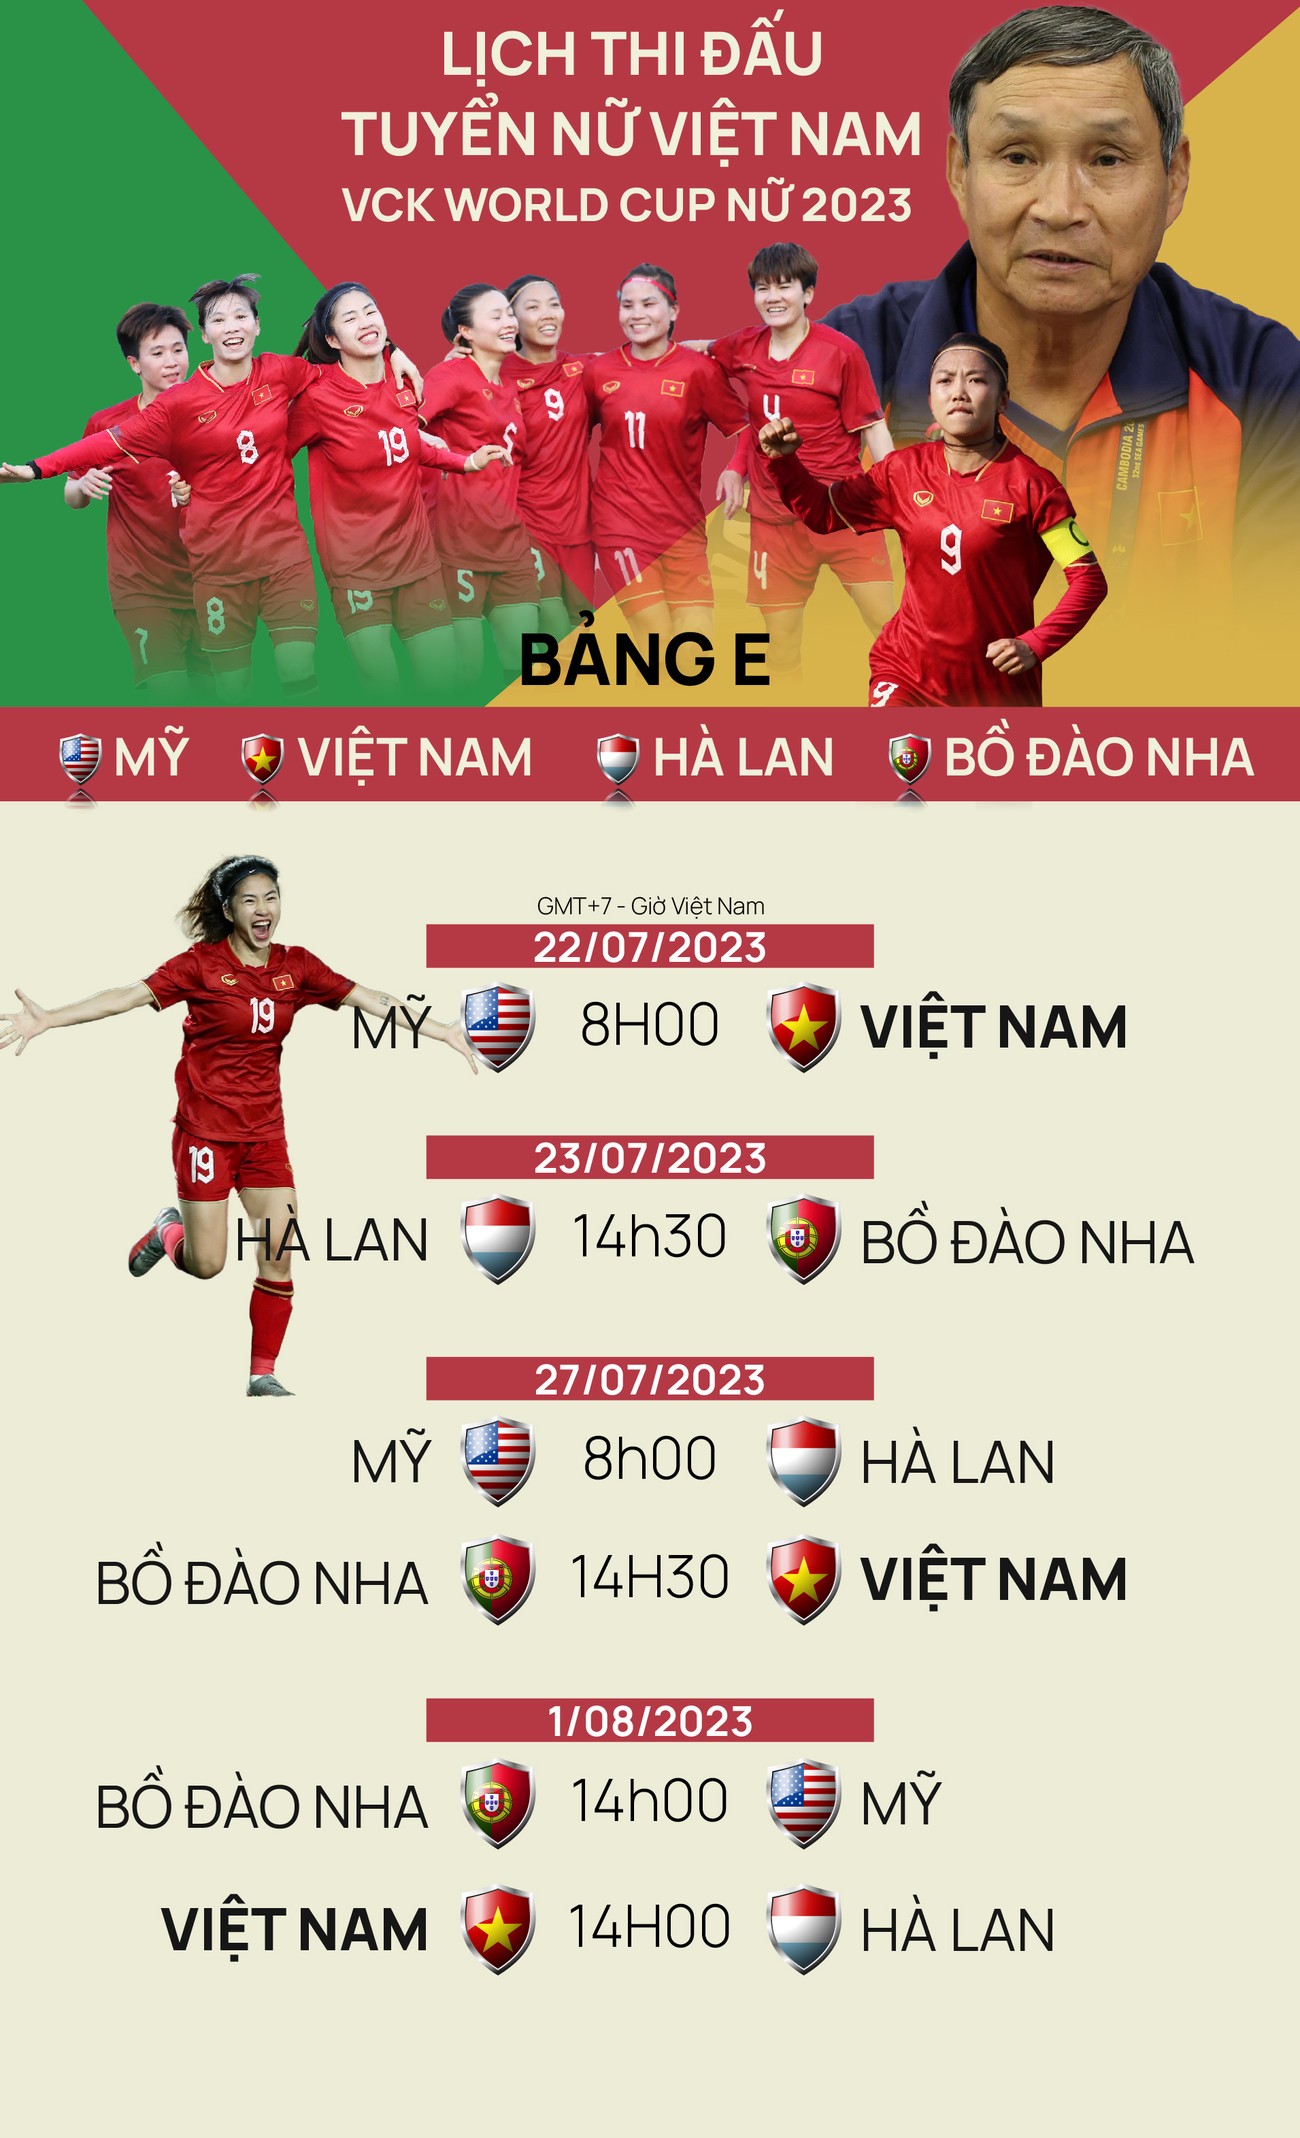 Lịch thi đấu tuyển nữ Việt Nam tại VCK World Cup nữ 2023 ảnh 1